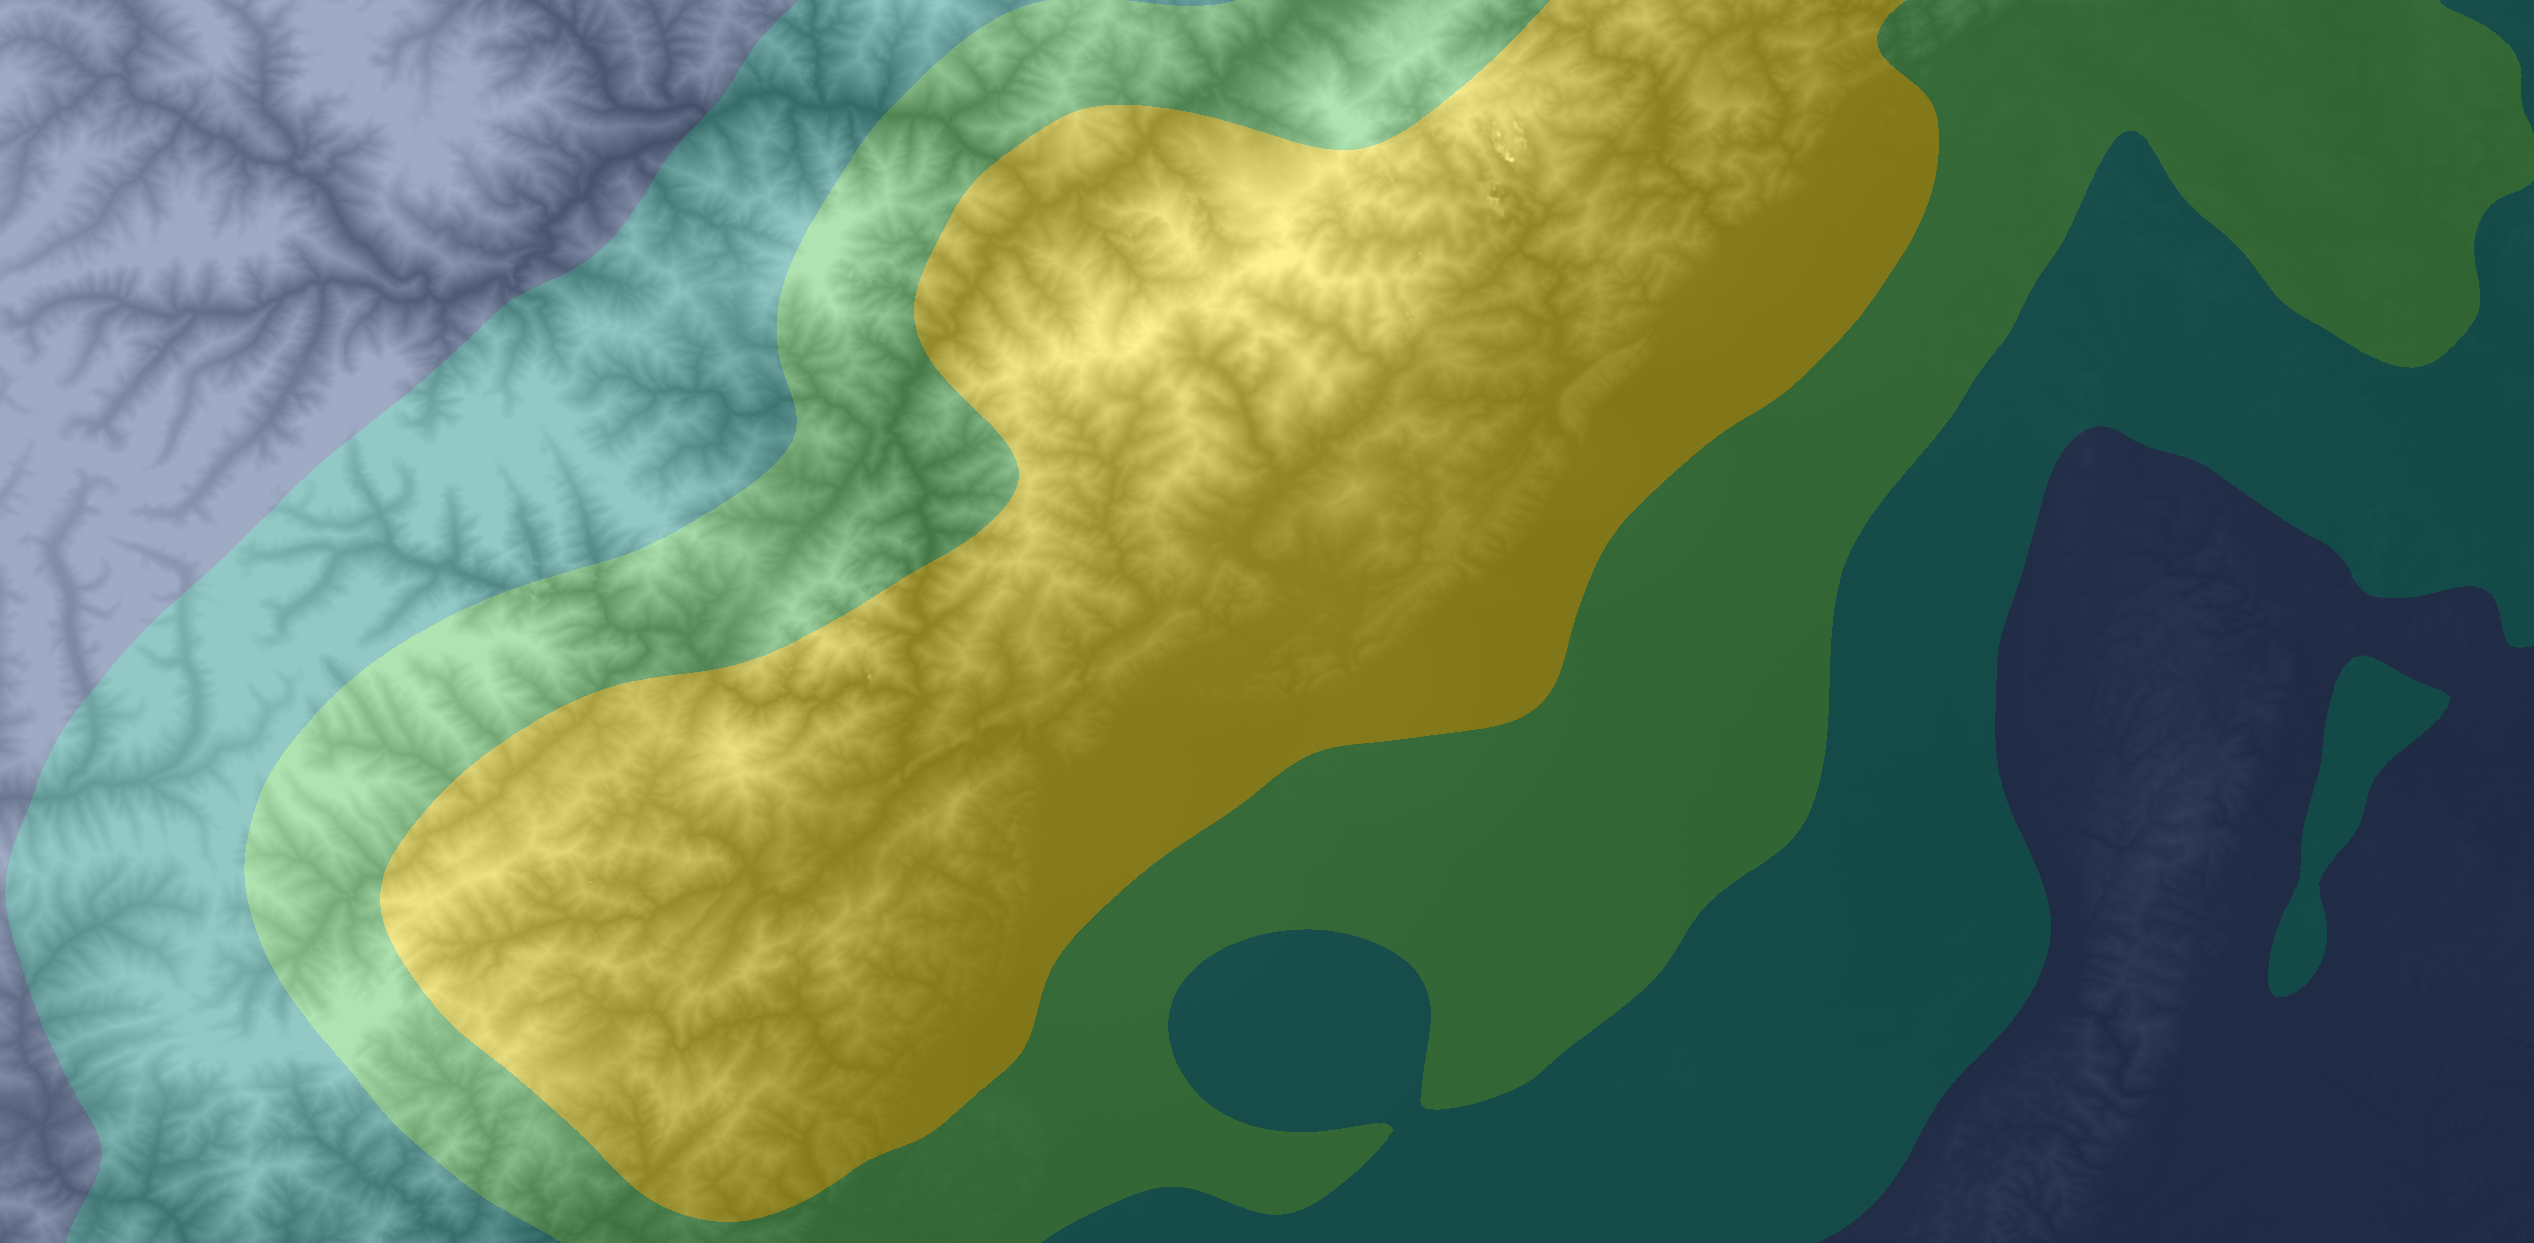 LandSlide Prediction Algorithm